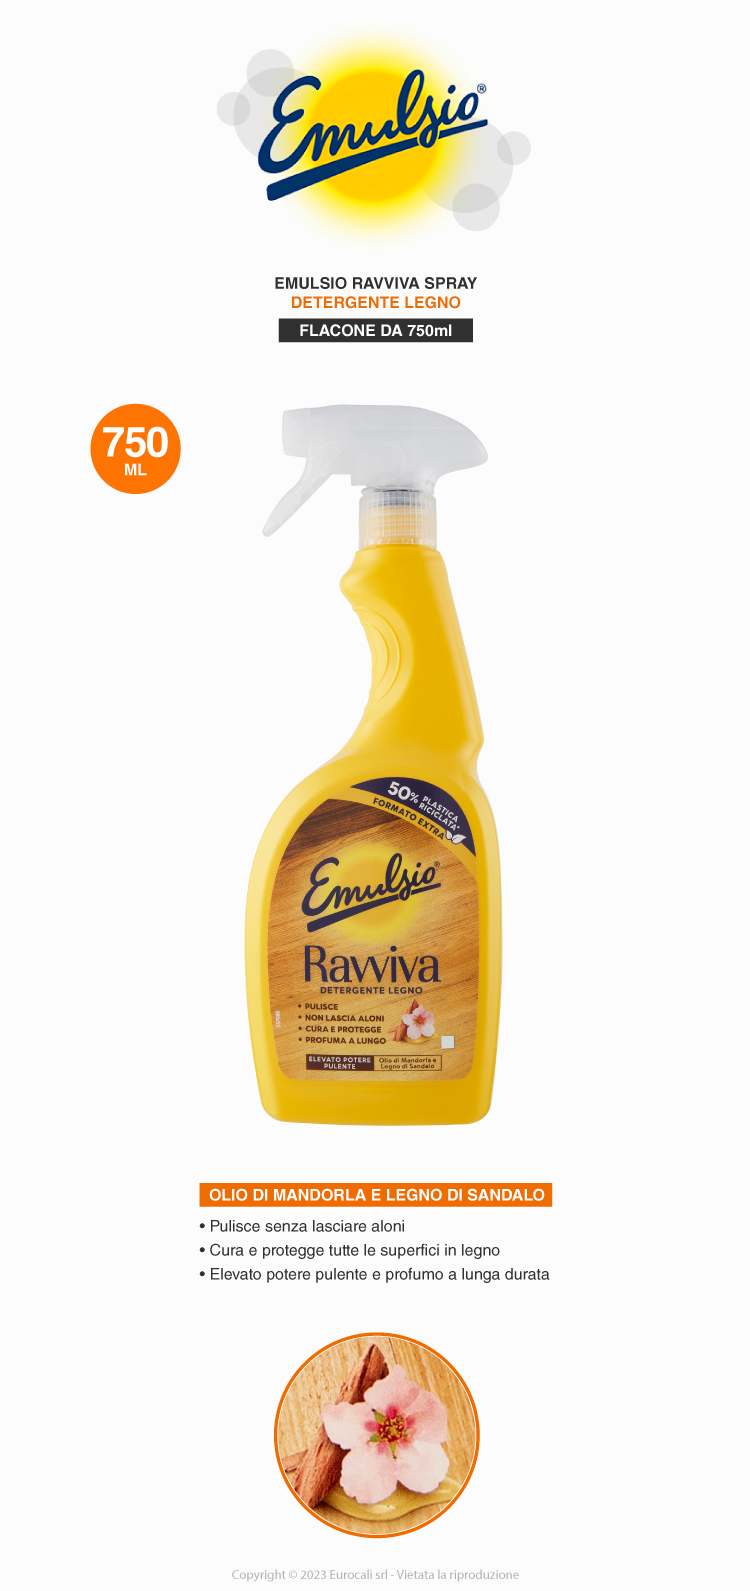 Emulsio Ravviva Detergente Legno spray olio di mandorla e legno di sandalo per ogni tipologia di superfici in legno 750ml